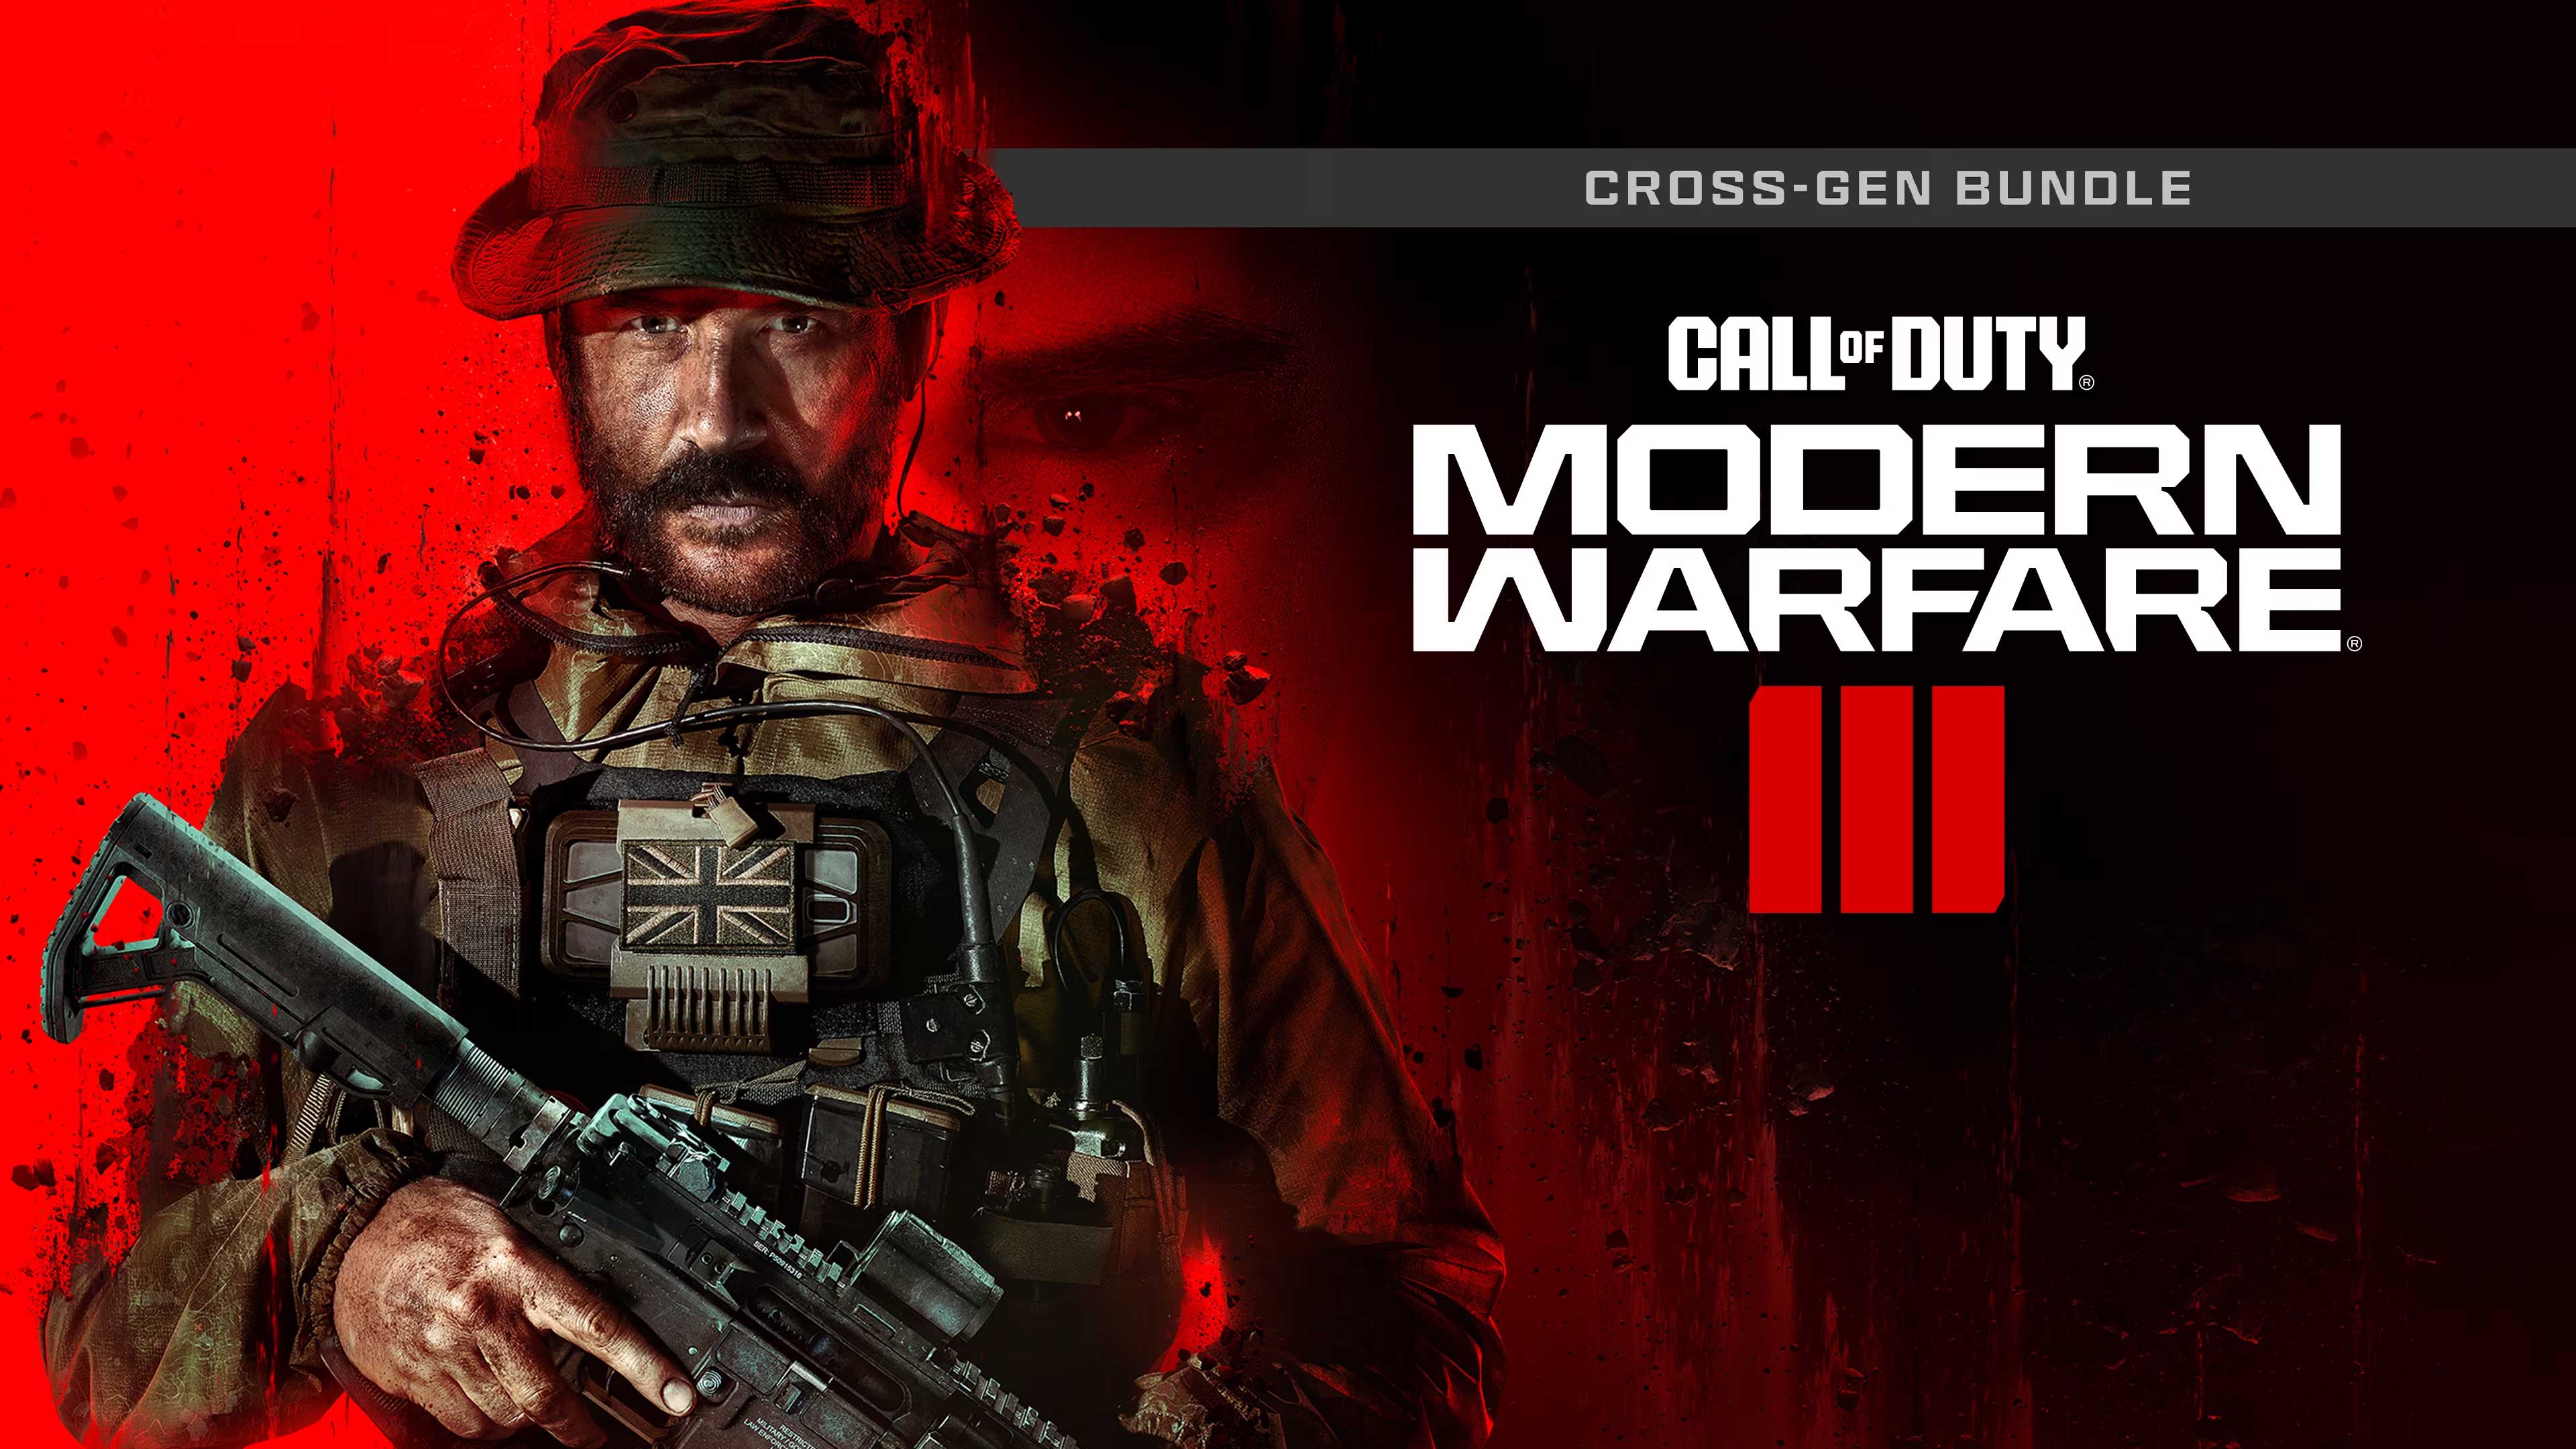 Call of Duty: Modern Warfare III - Cross-Gen Bundle, What Would You Gift, whatwouldyougift.com